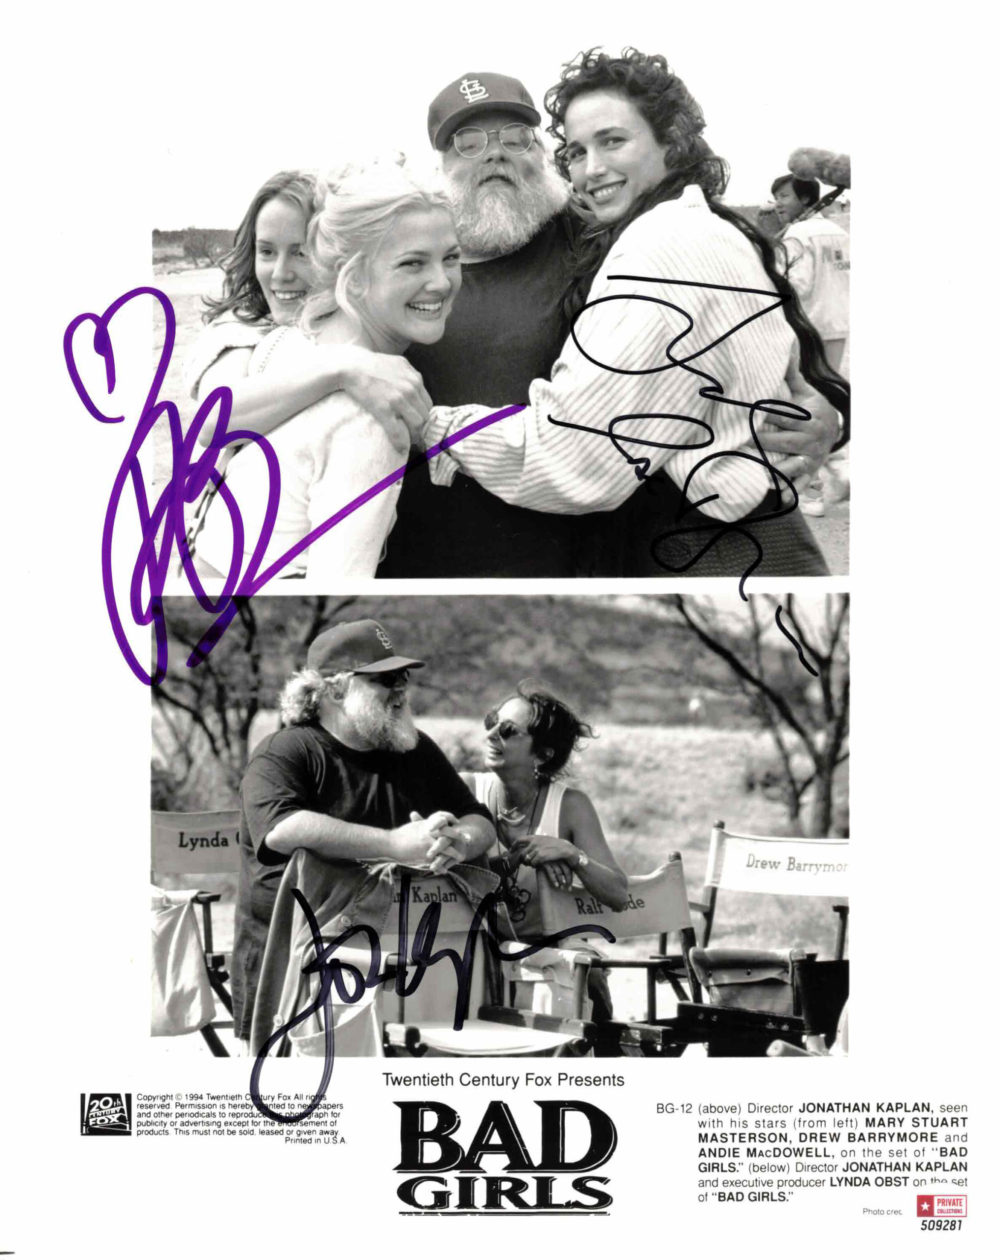 Drew Barrymore, Andie MacDowell & Jonathan Kaplan - autogram